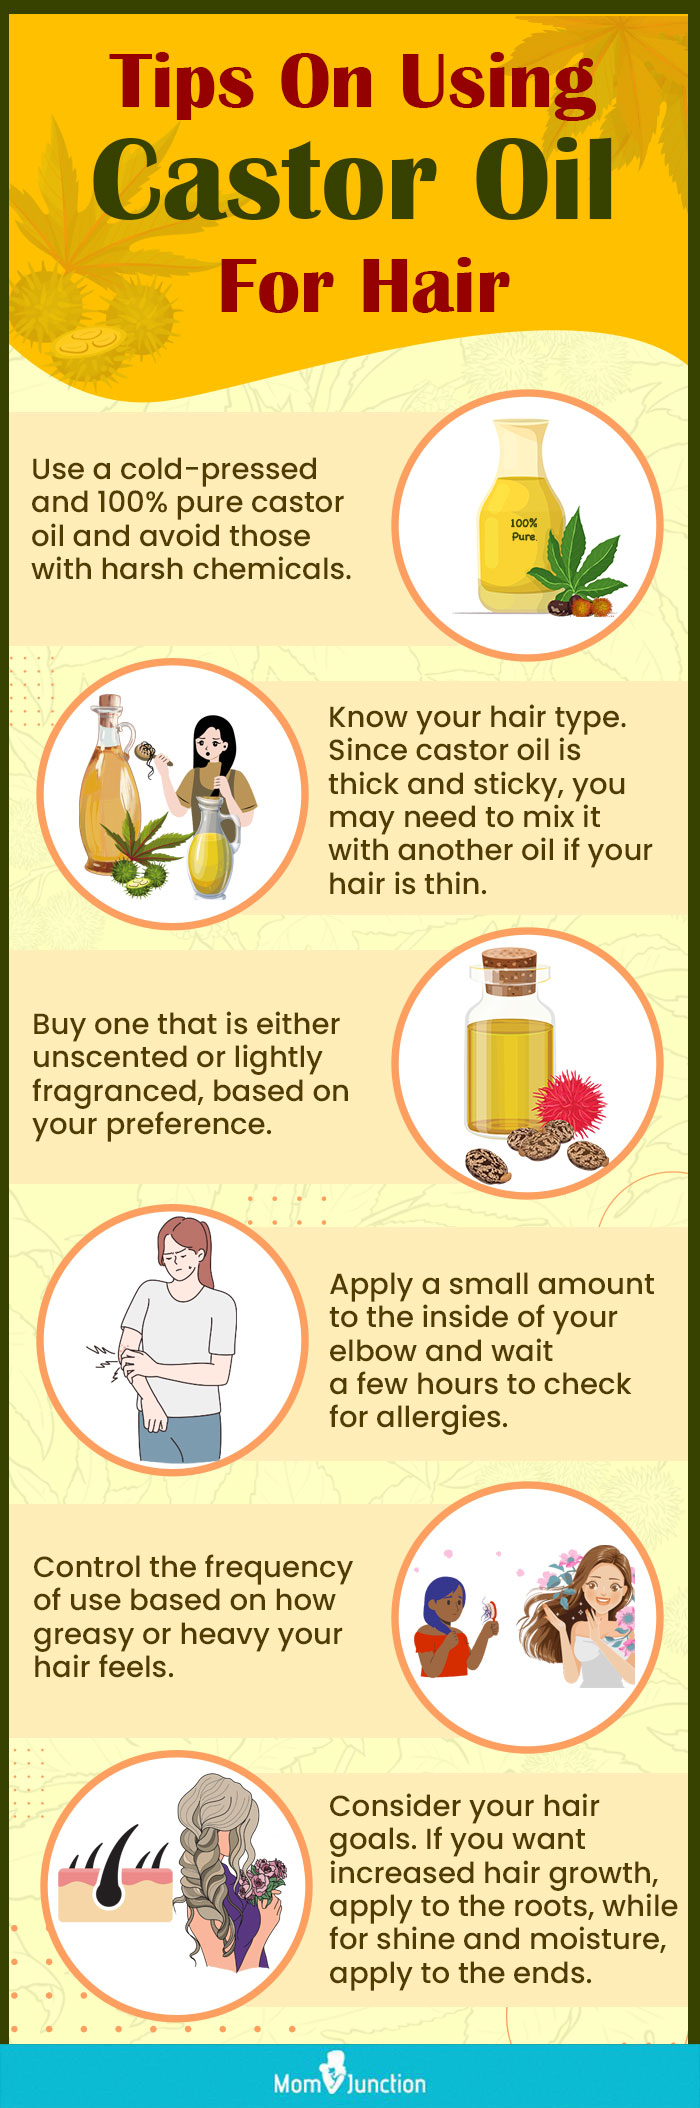 Tips-On-Using-Castor-Oil-For-Hair [infographic]